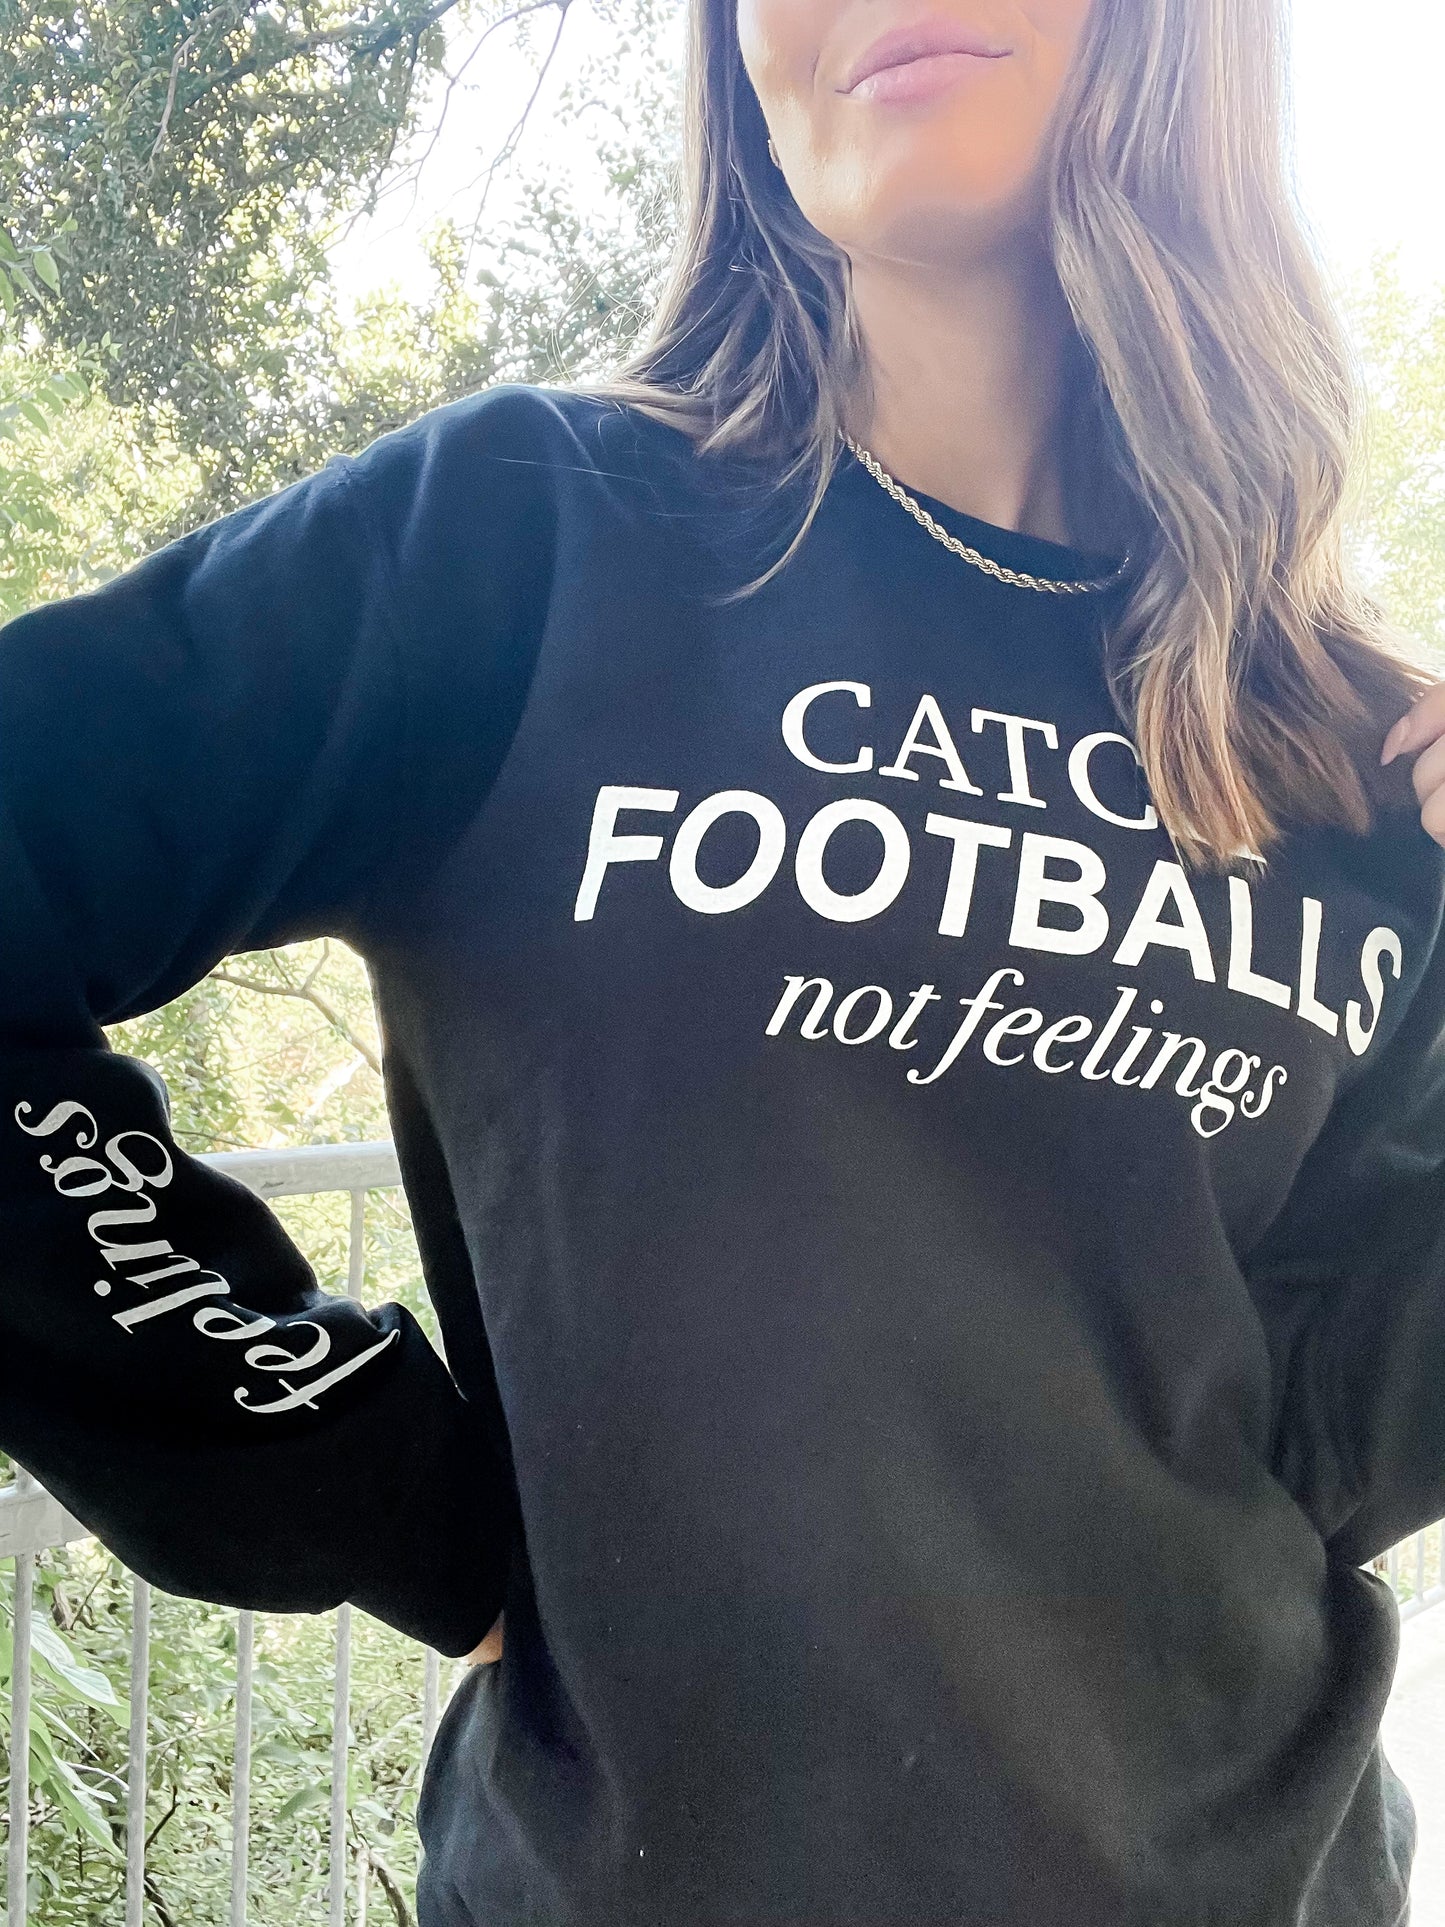 Catch Footballs NOT Feelings